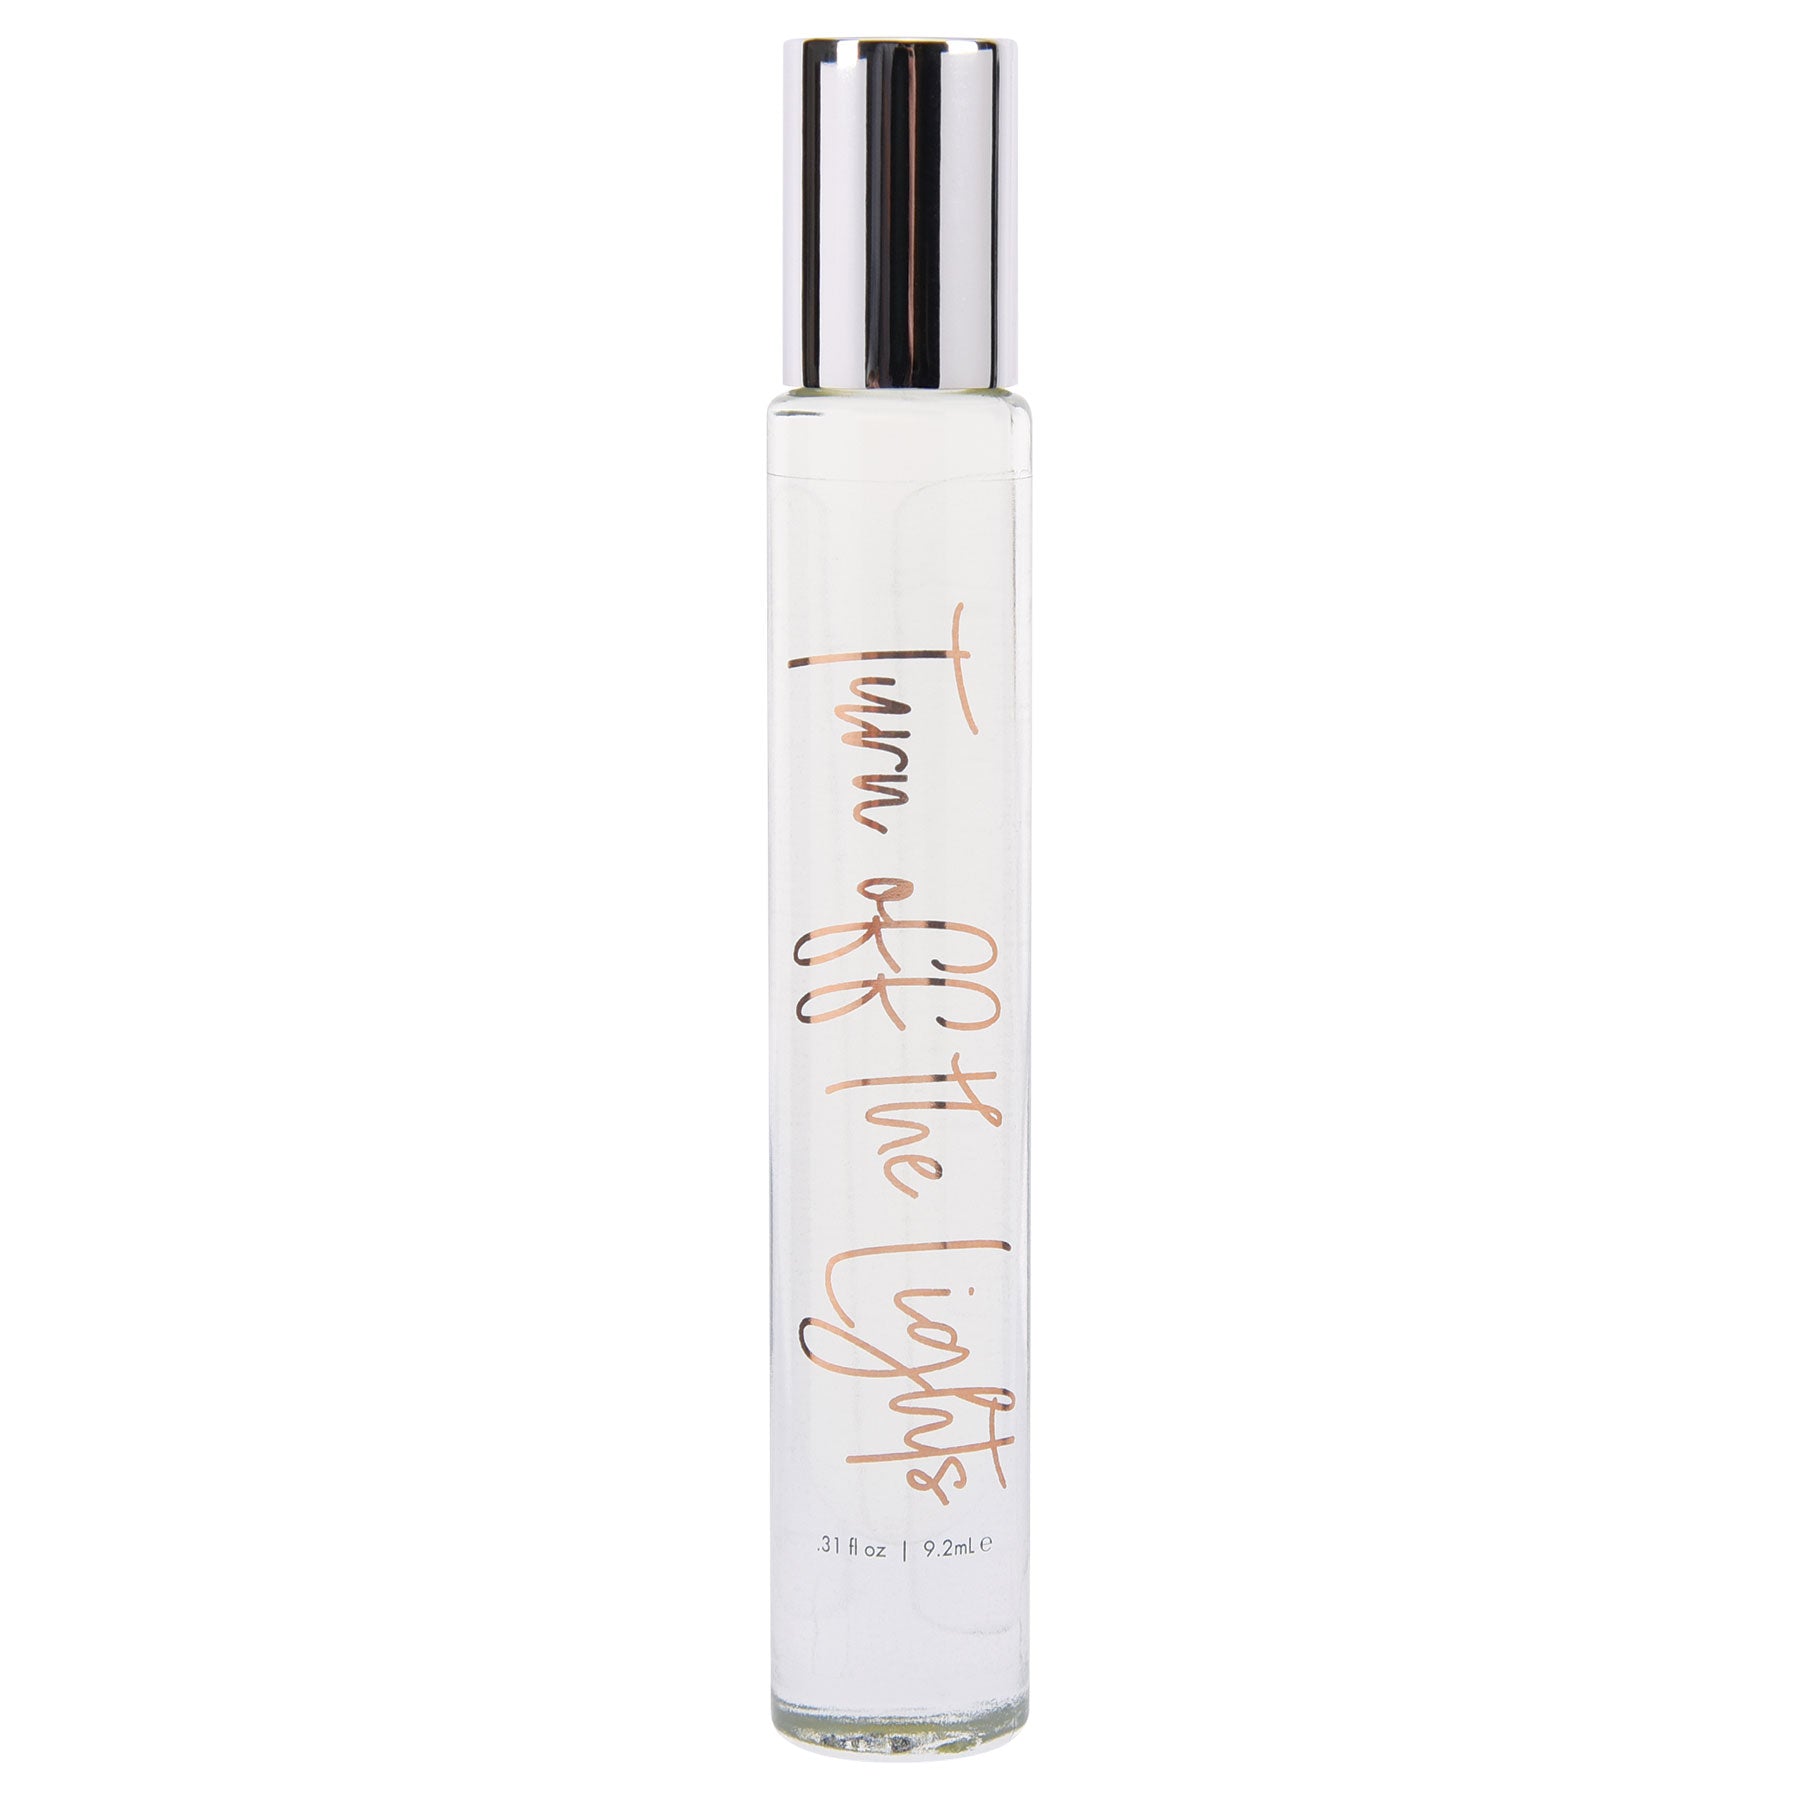 Turn Off the Lights- Pheromone Perfume Oil - 9.2 ml